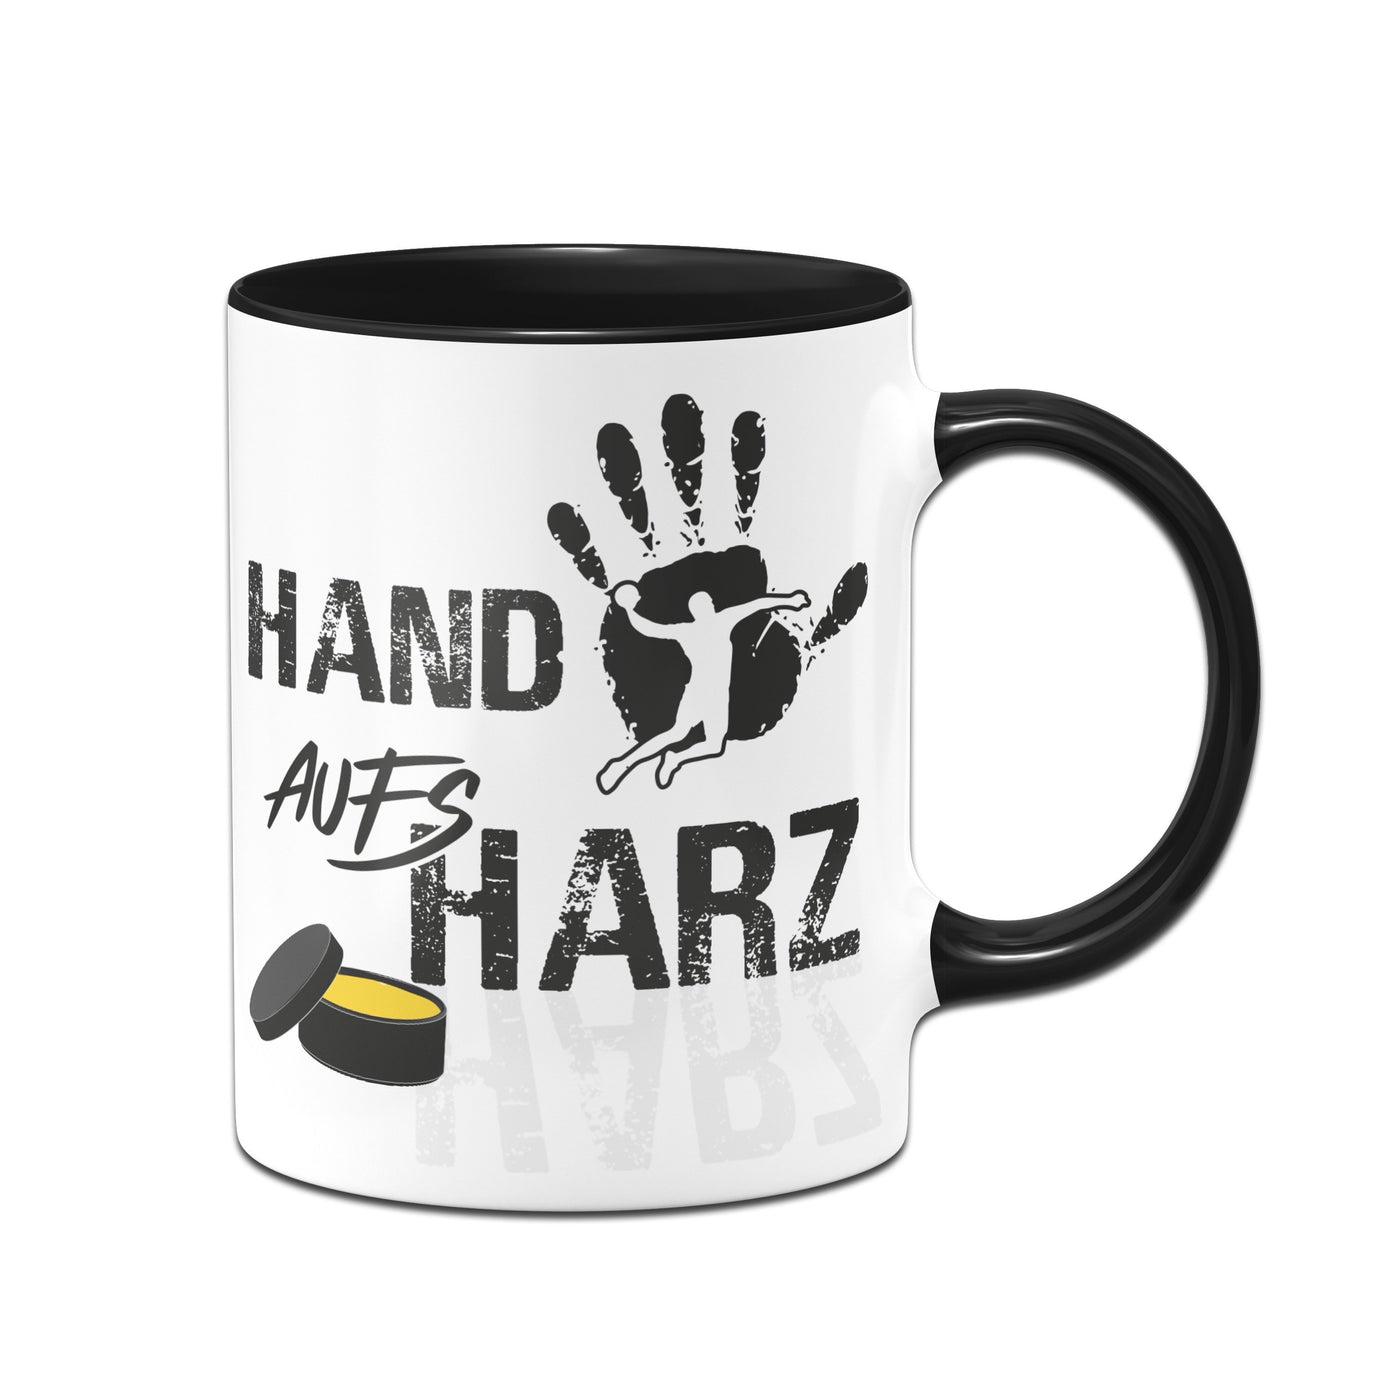 Bild: Tasse - Hand aufs Harz Geschenkidee